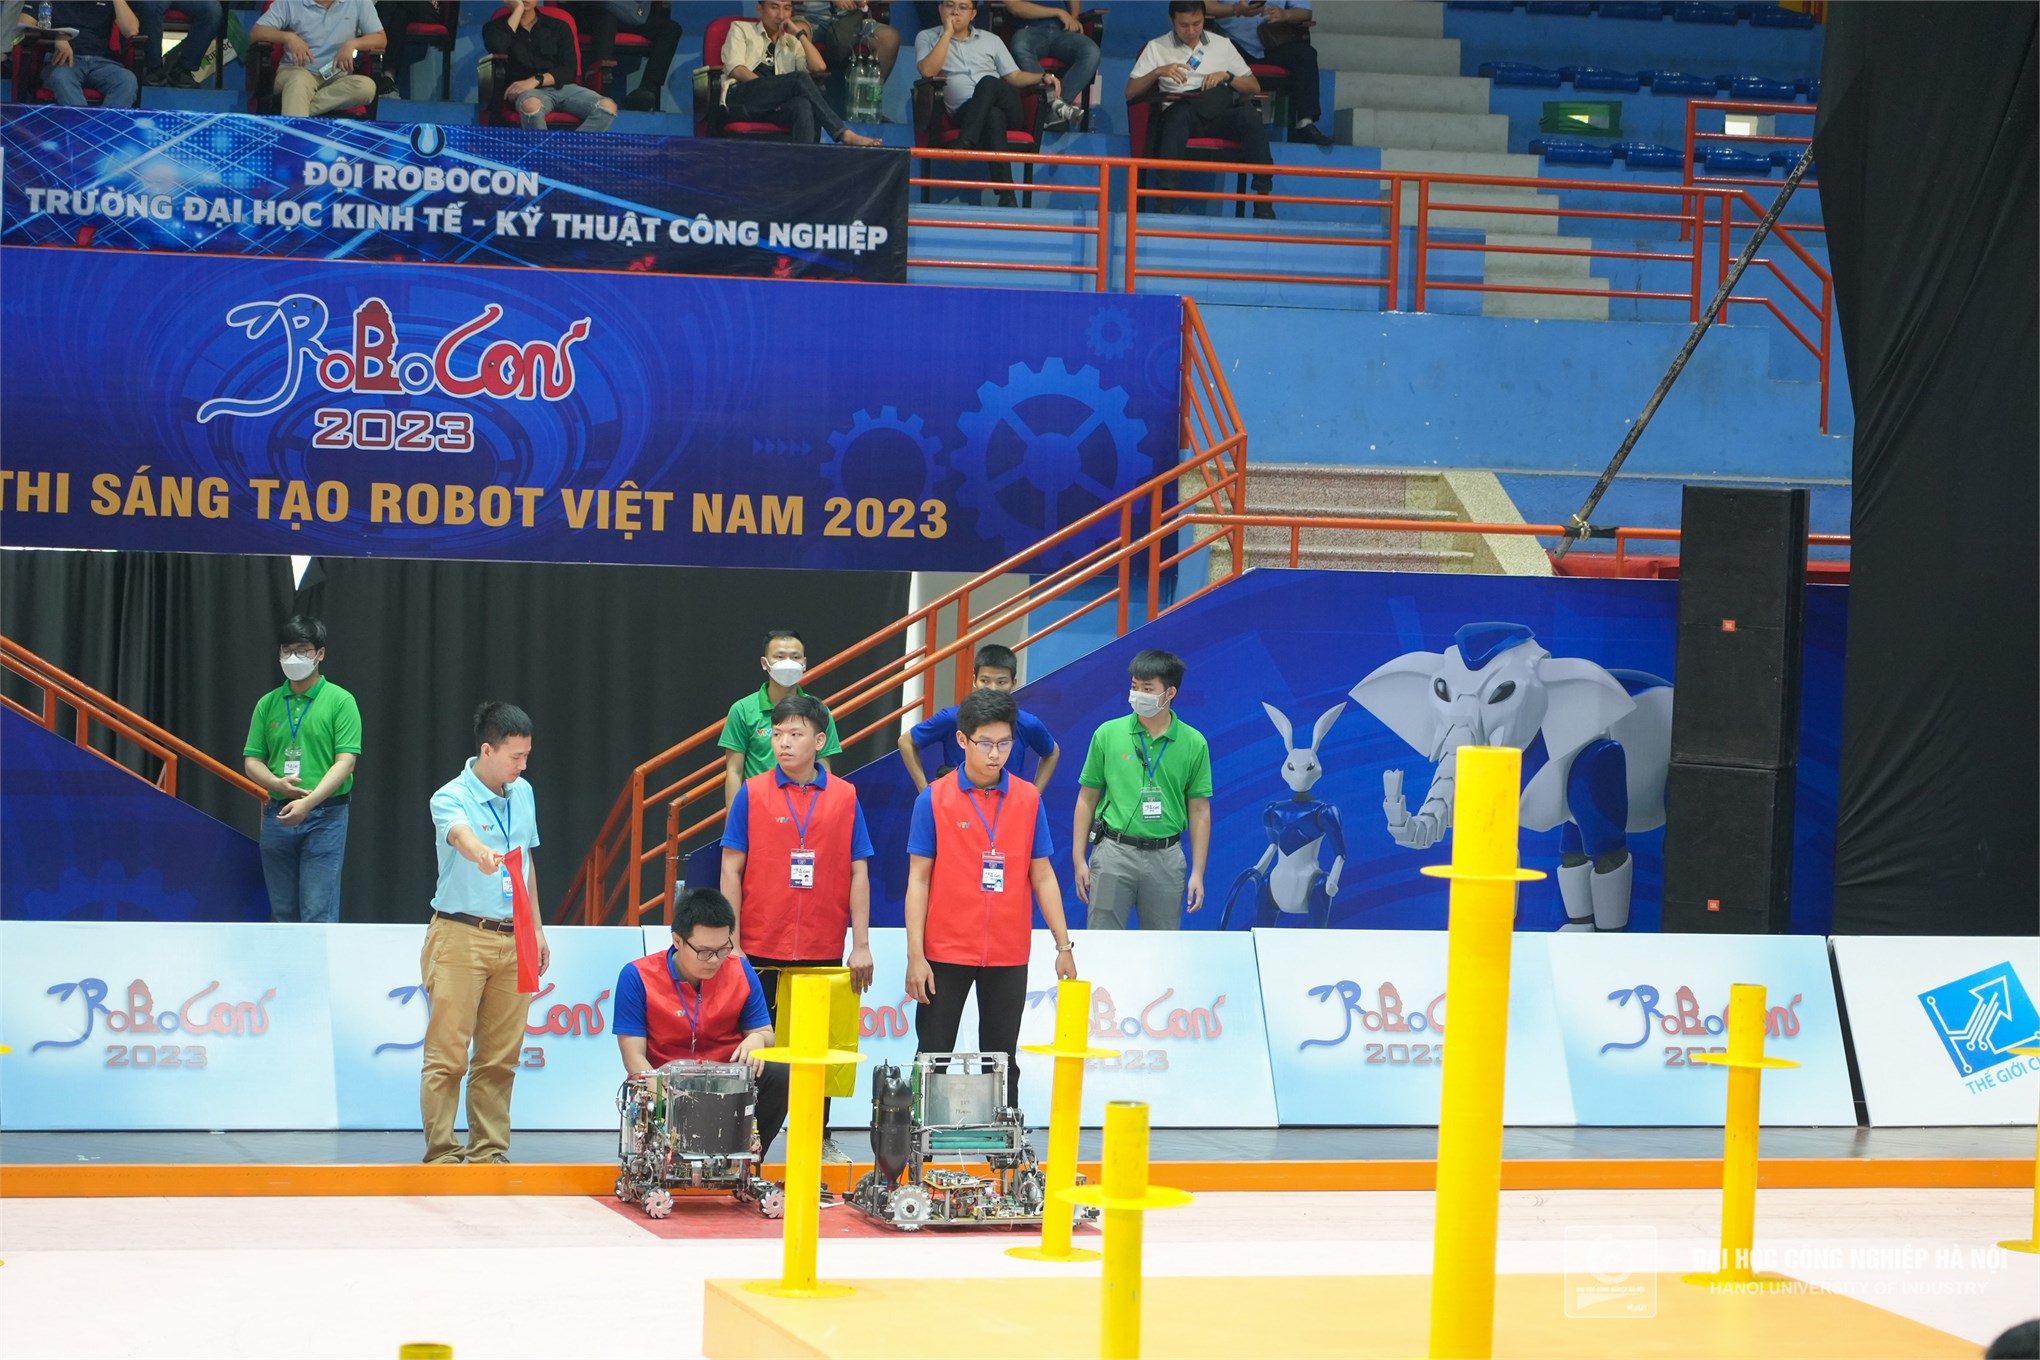 4 đội giành vé vào Chung kết toàn quốc cuộc thi sáng tạo Robot Việt Nam 2023